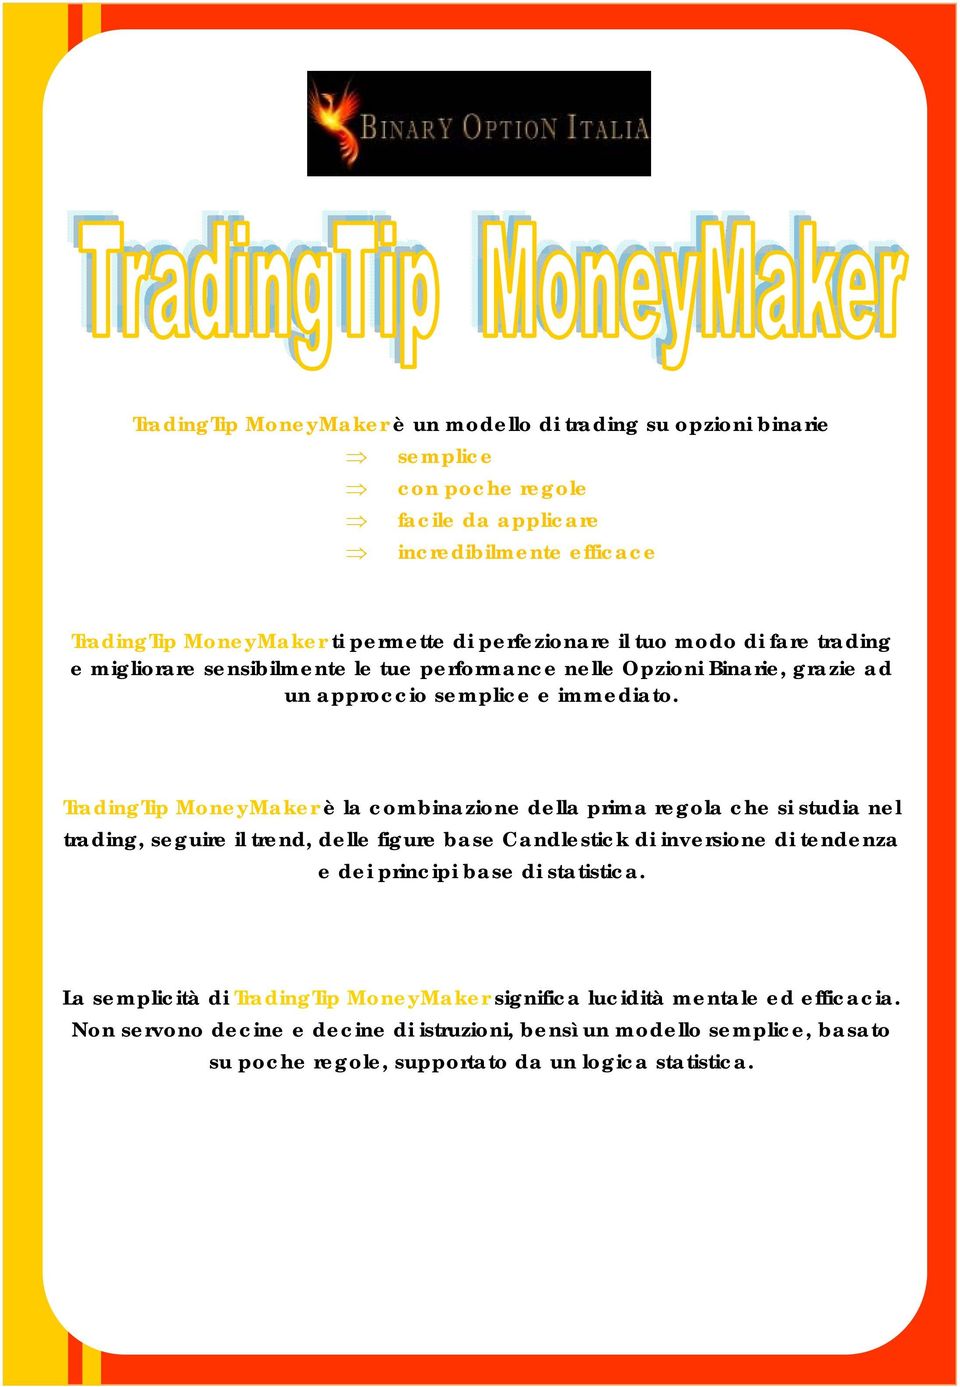 TradingTip MoneyMaker è la combinazione della prima regola che si studia nel trading, seguire il trend, delle figure base Candlestick di inversione di tendenza e dei principi base di